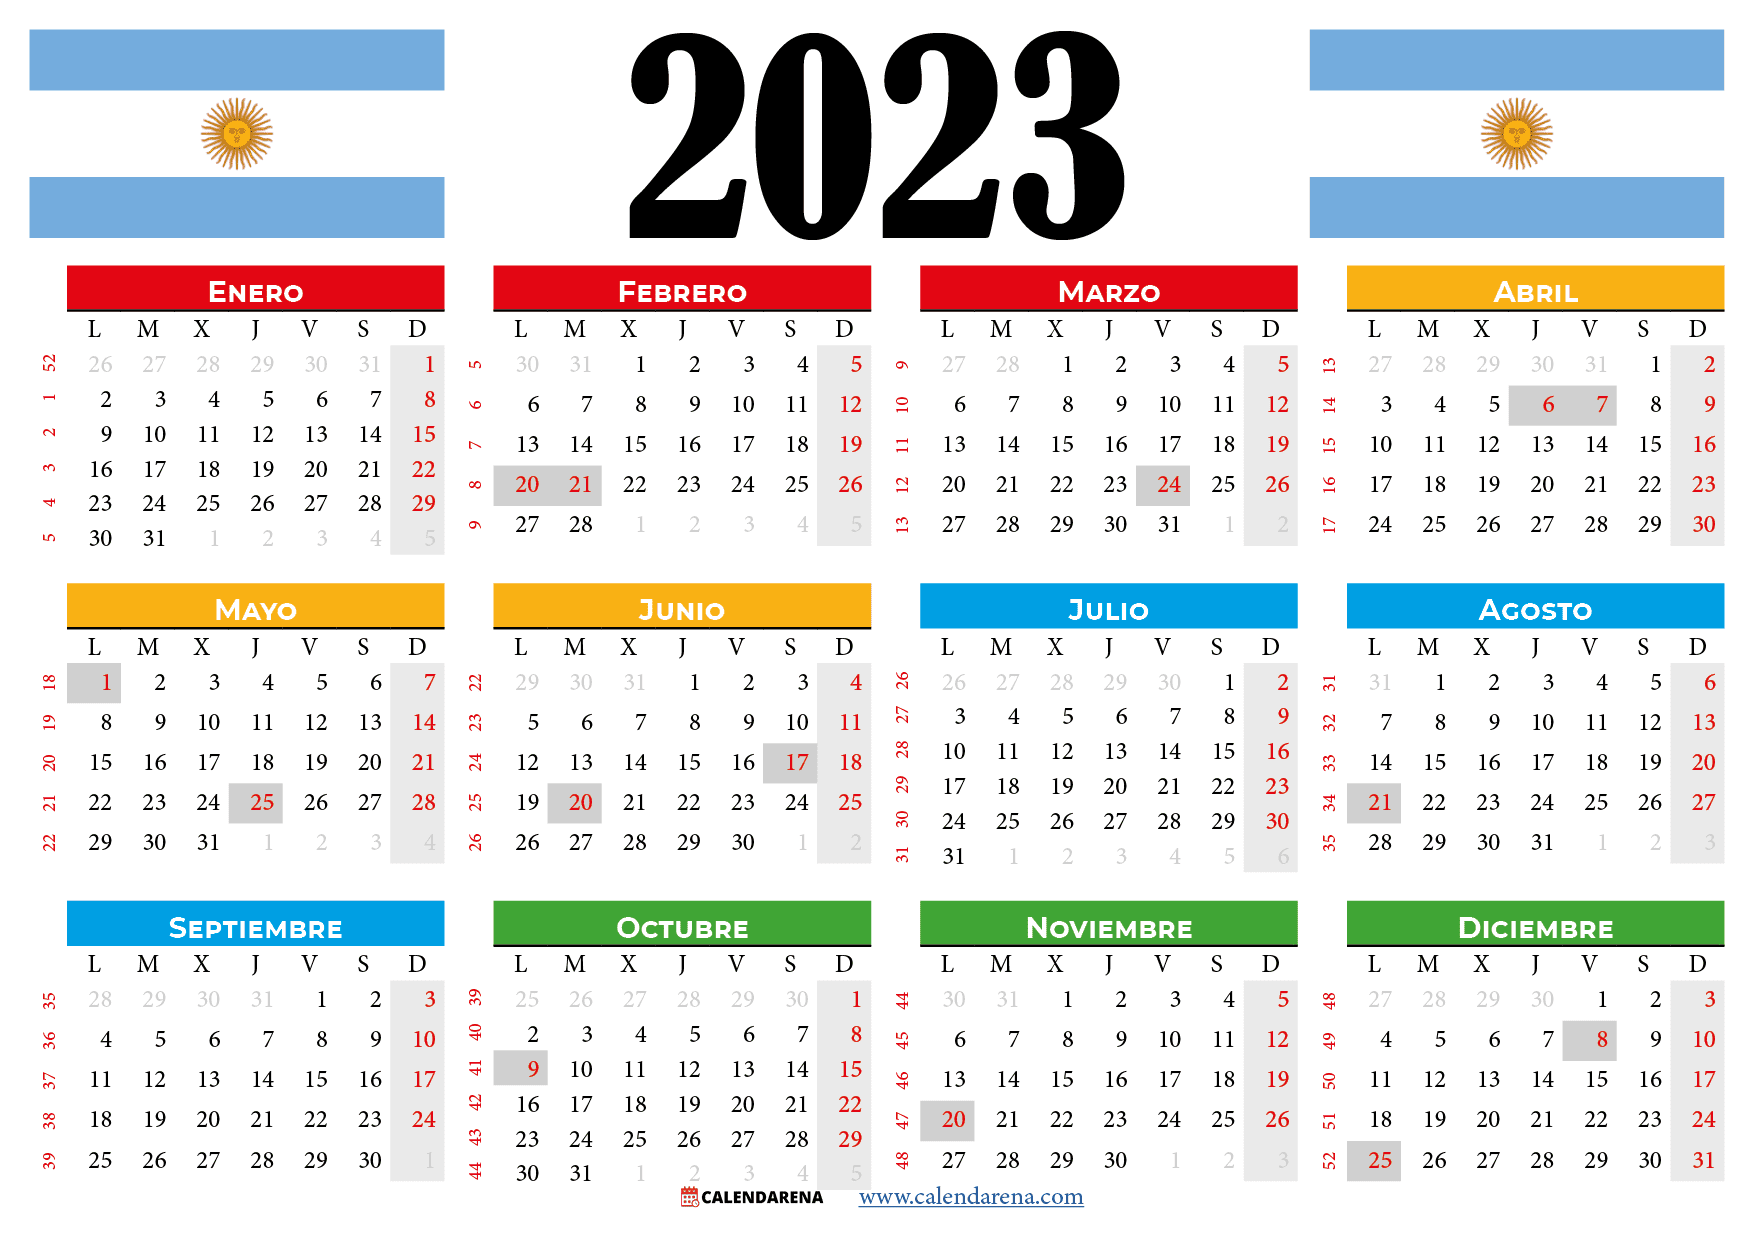 Calendario 2023 Argentina Mensual Significado Dos Son vrogue.co